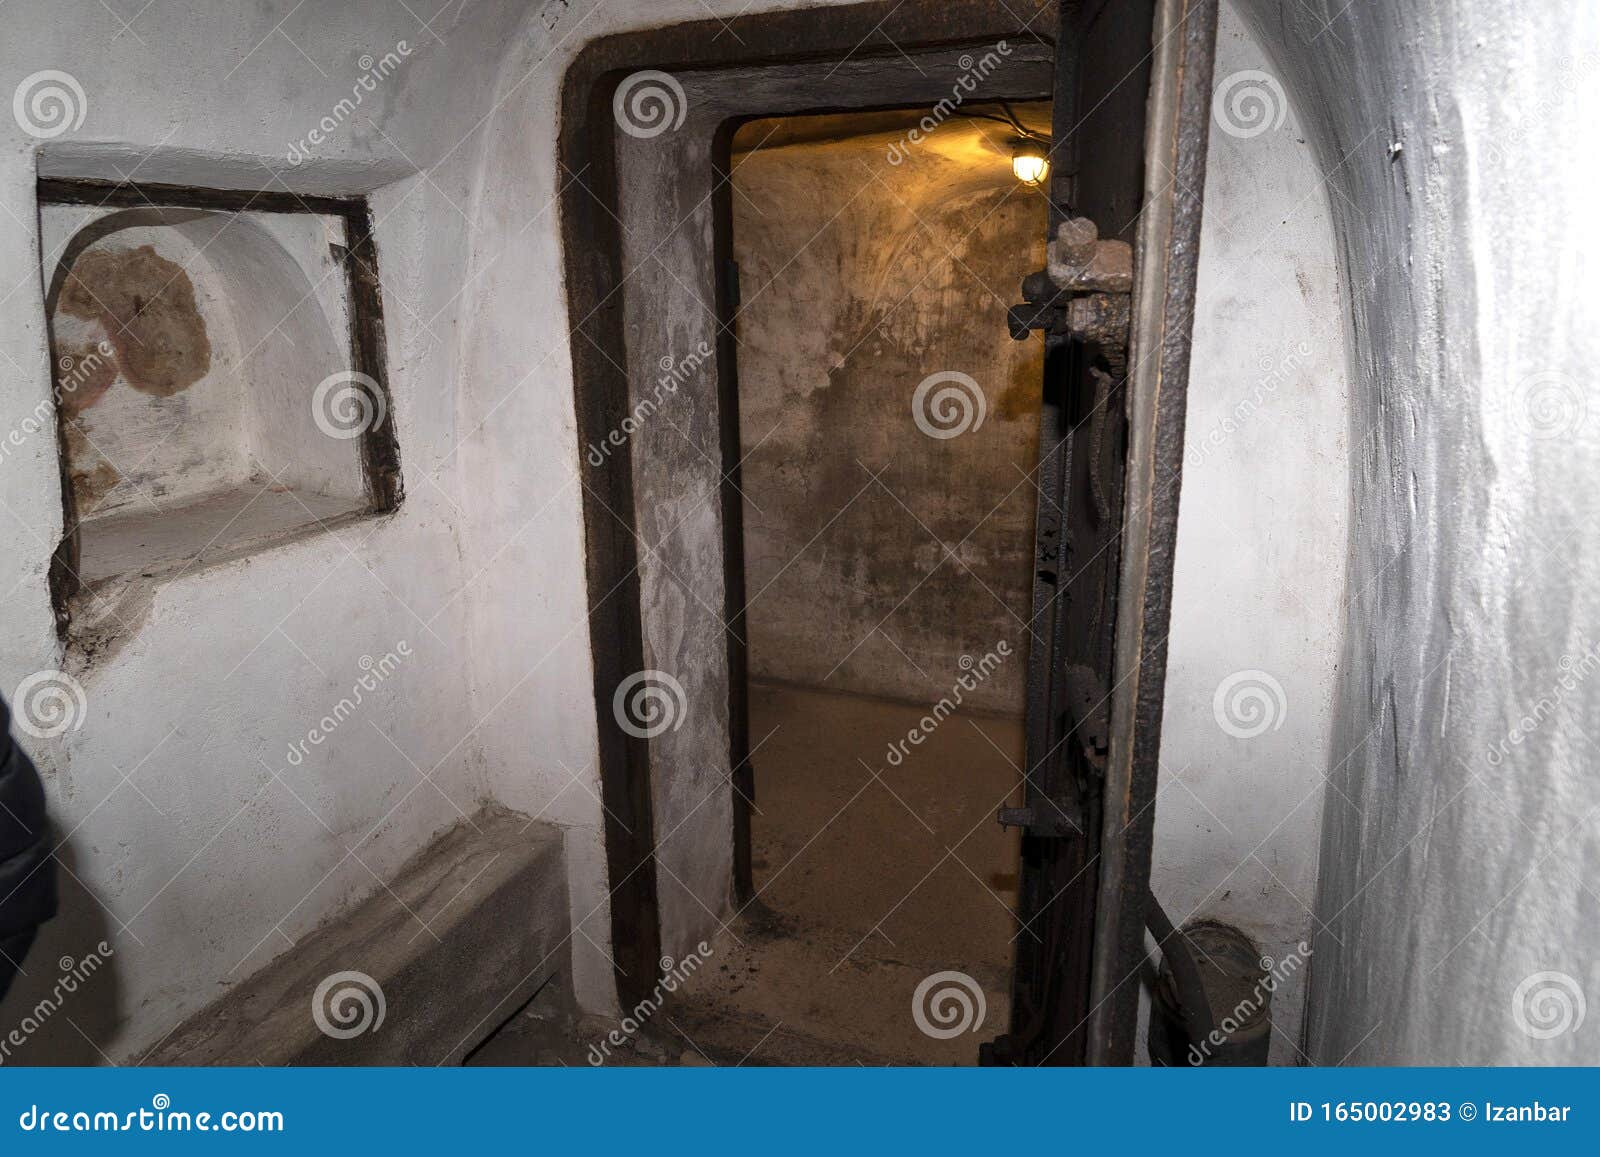 historical bunker antigas door in rome